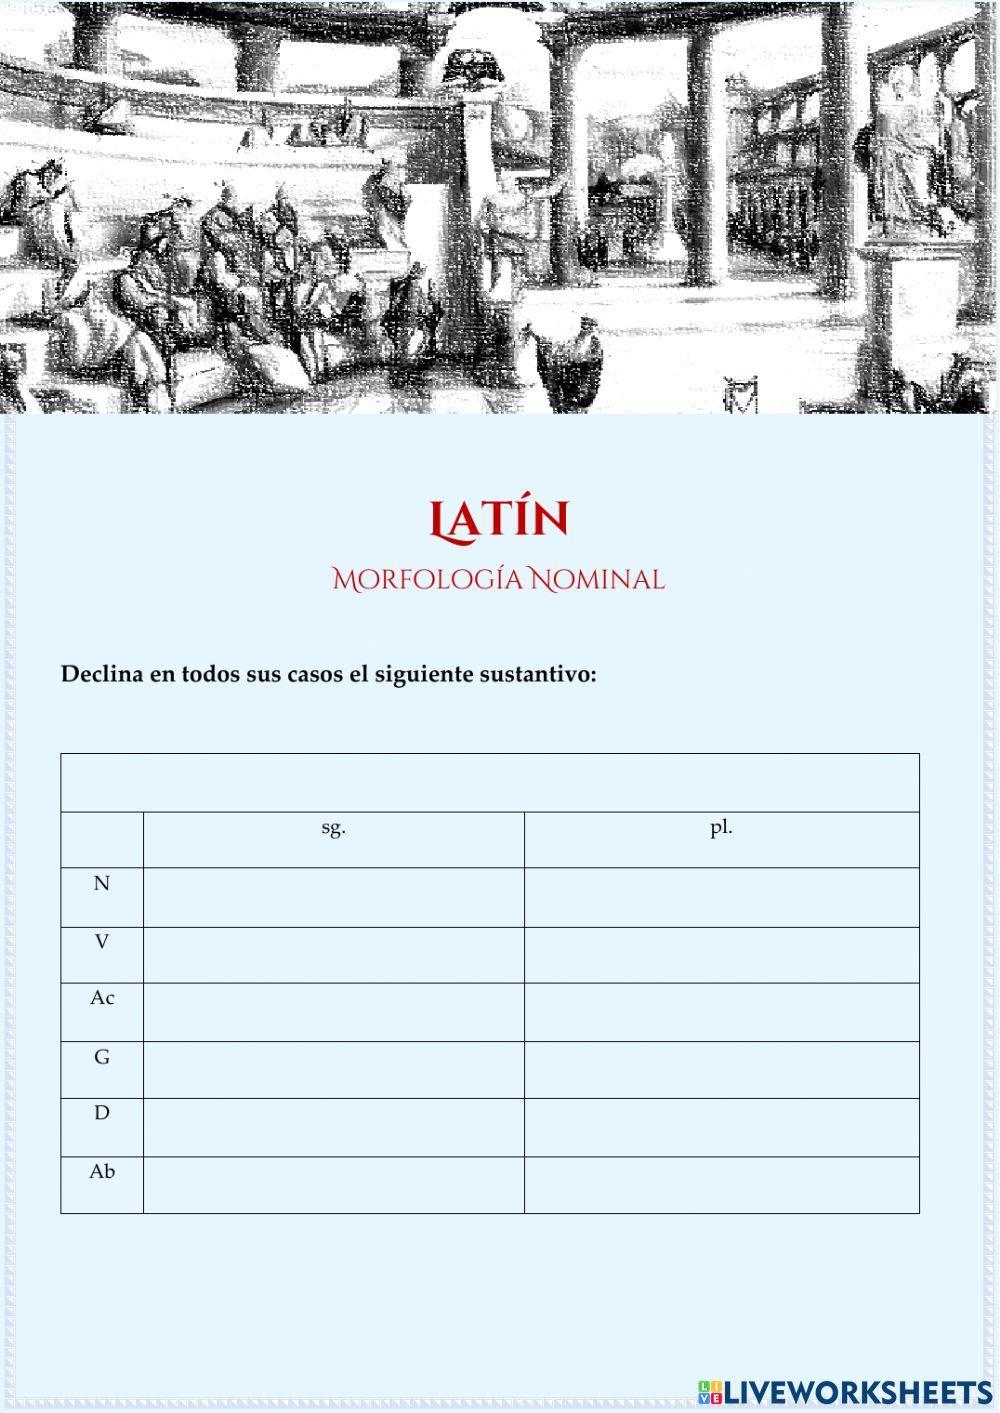 amicus -i (m.) - Declinación nominal Latín - Declina escribiendo por completo el sustantivo en todos sus casos